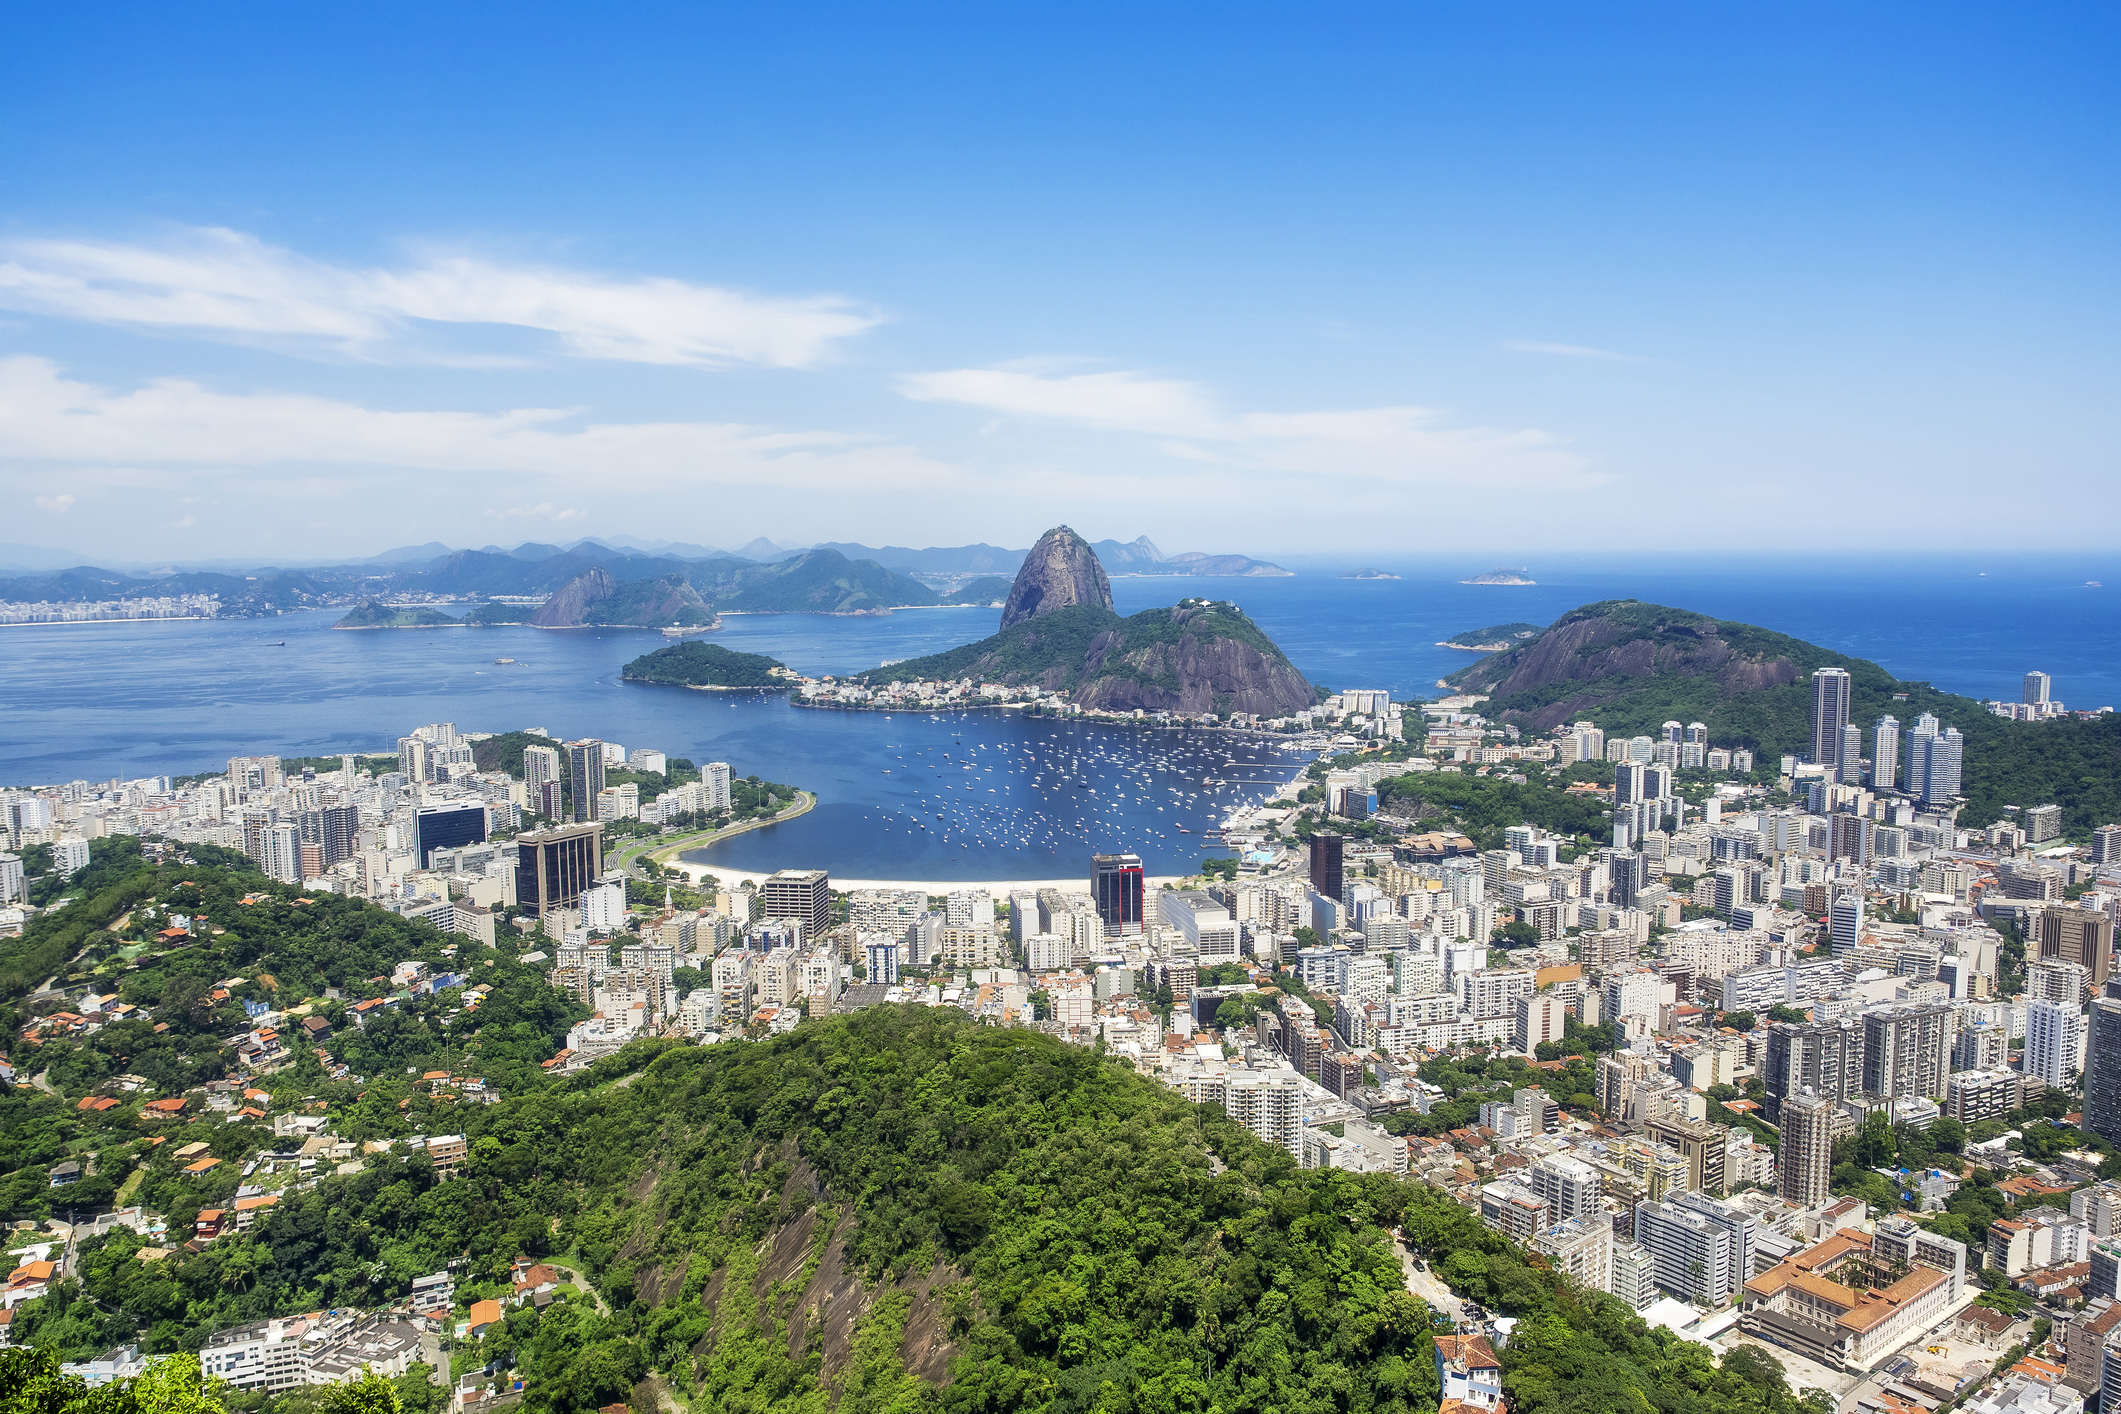 Rio de Janeiro and Brazil